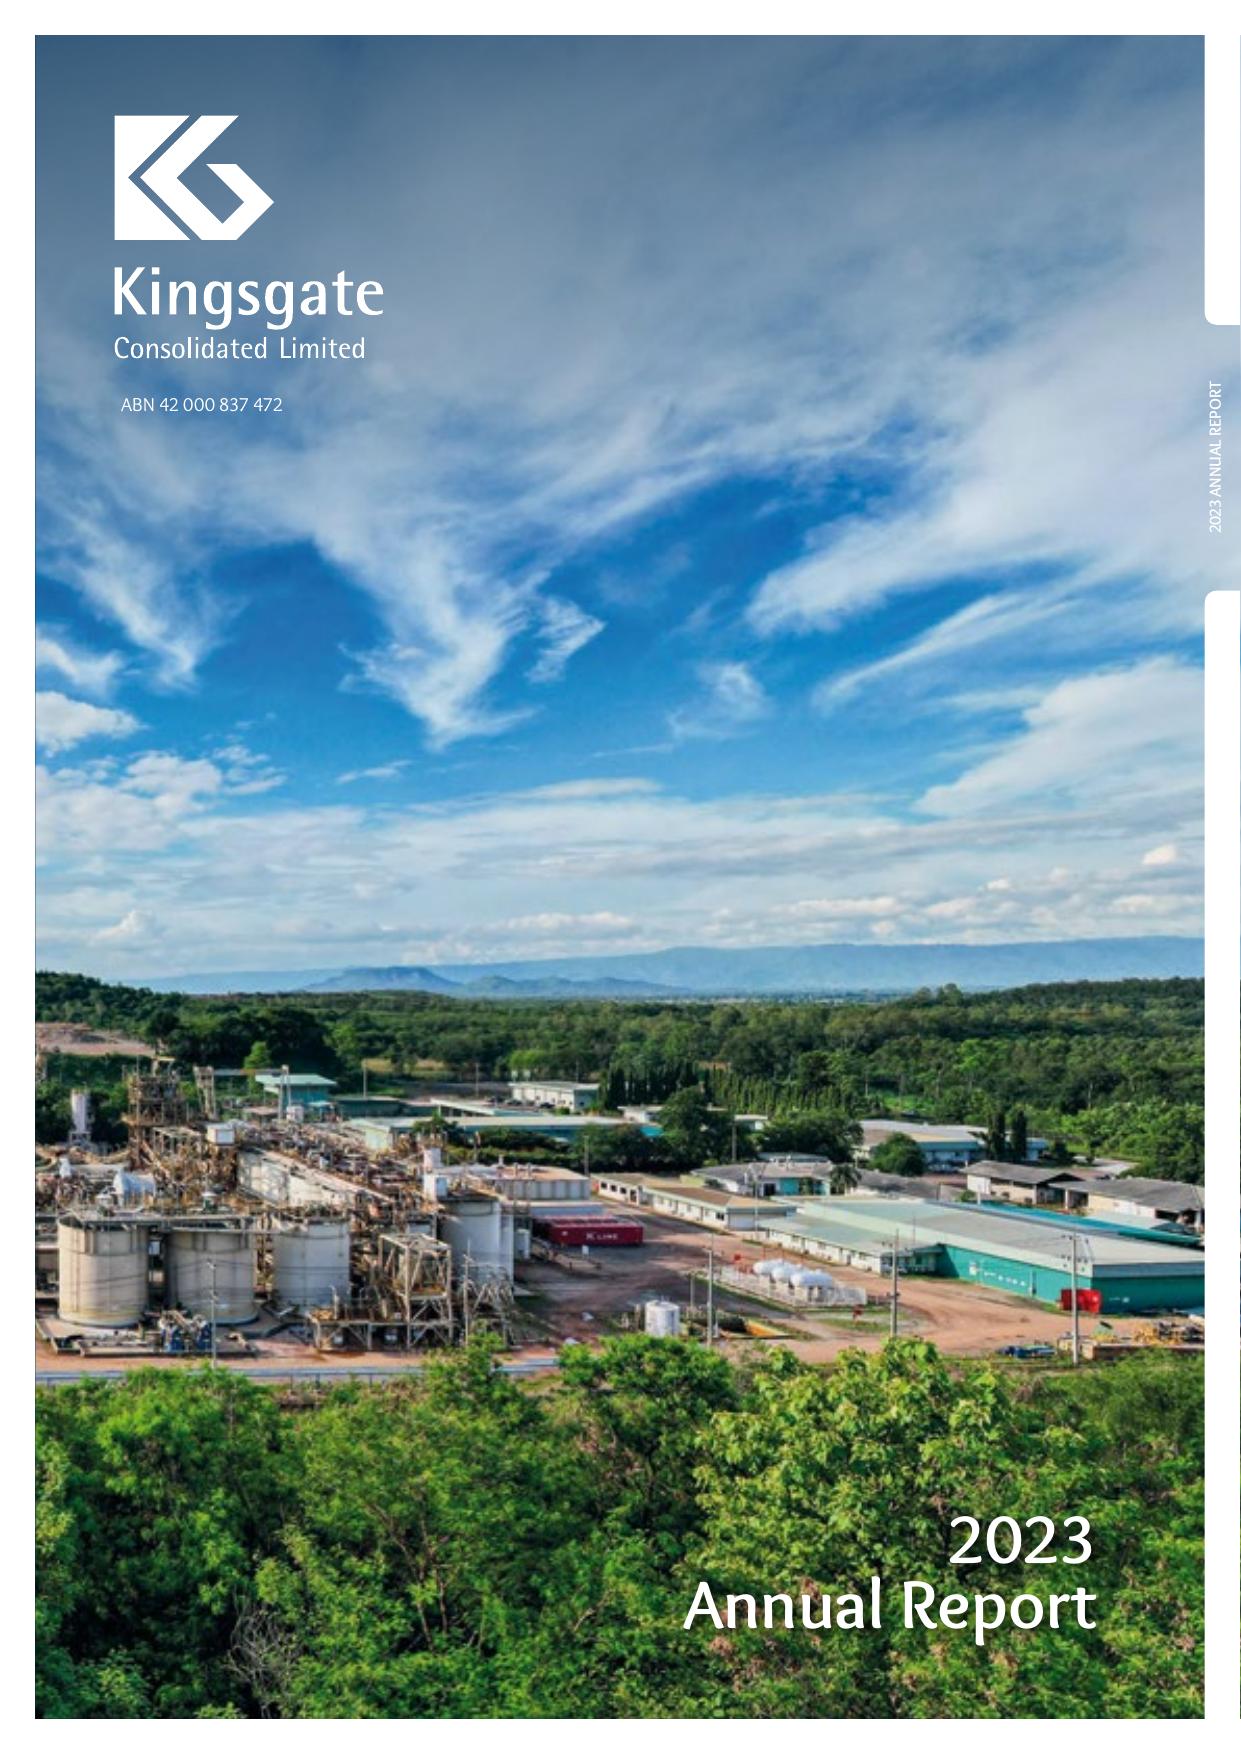 KINGSGATE 2023 Annual Report